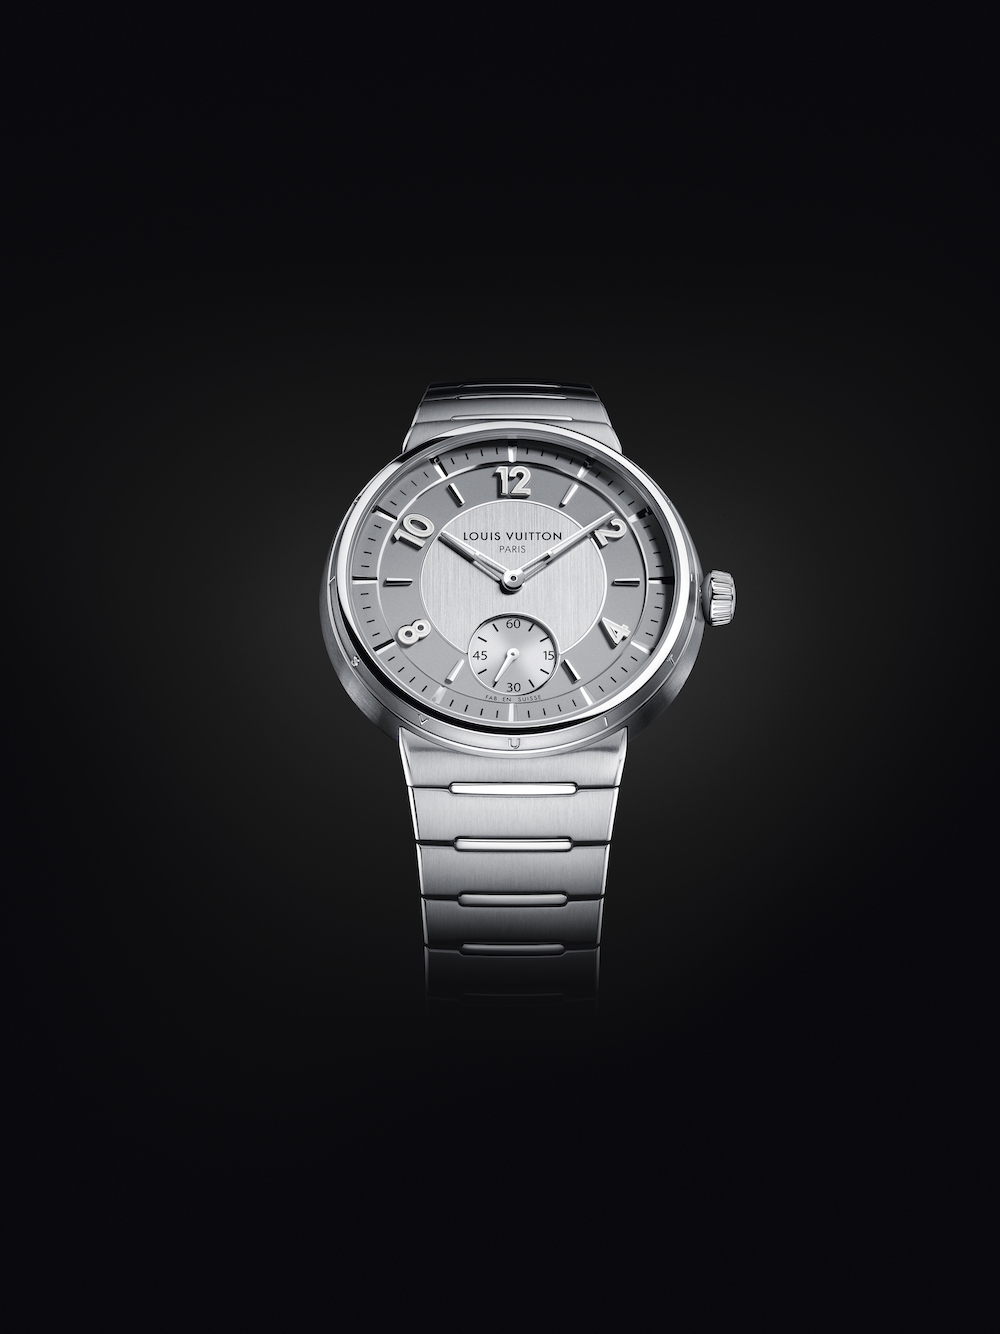 El reloj que Louis Vuitton acaba de presentar podría ser lo más parecido  que tenemos a mano a la relojería del futuro